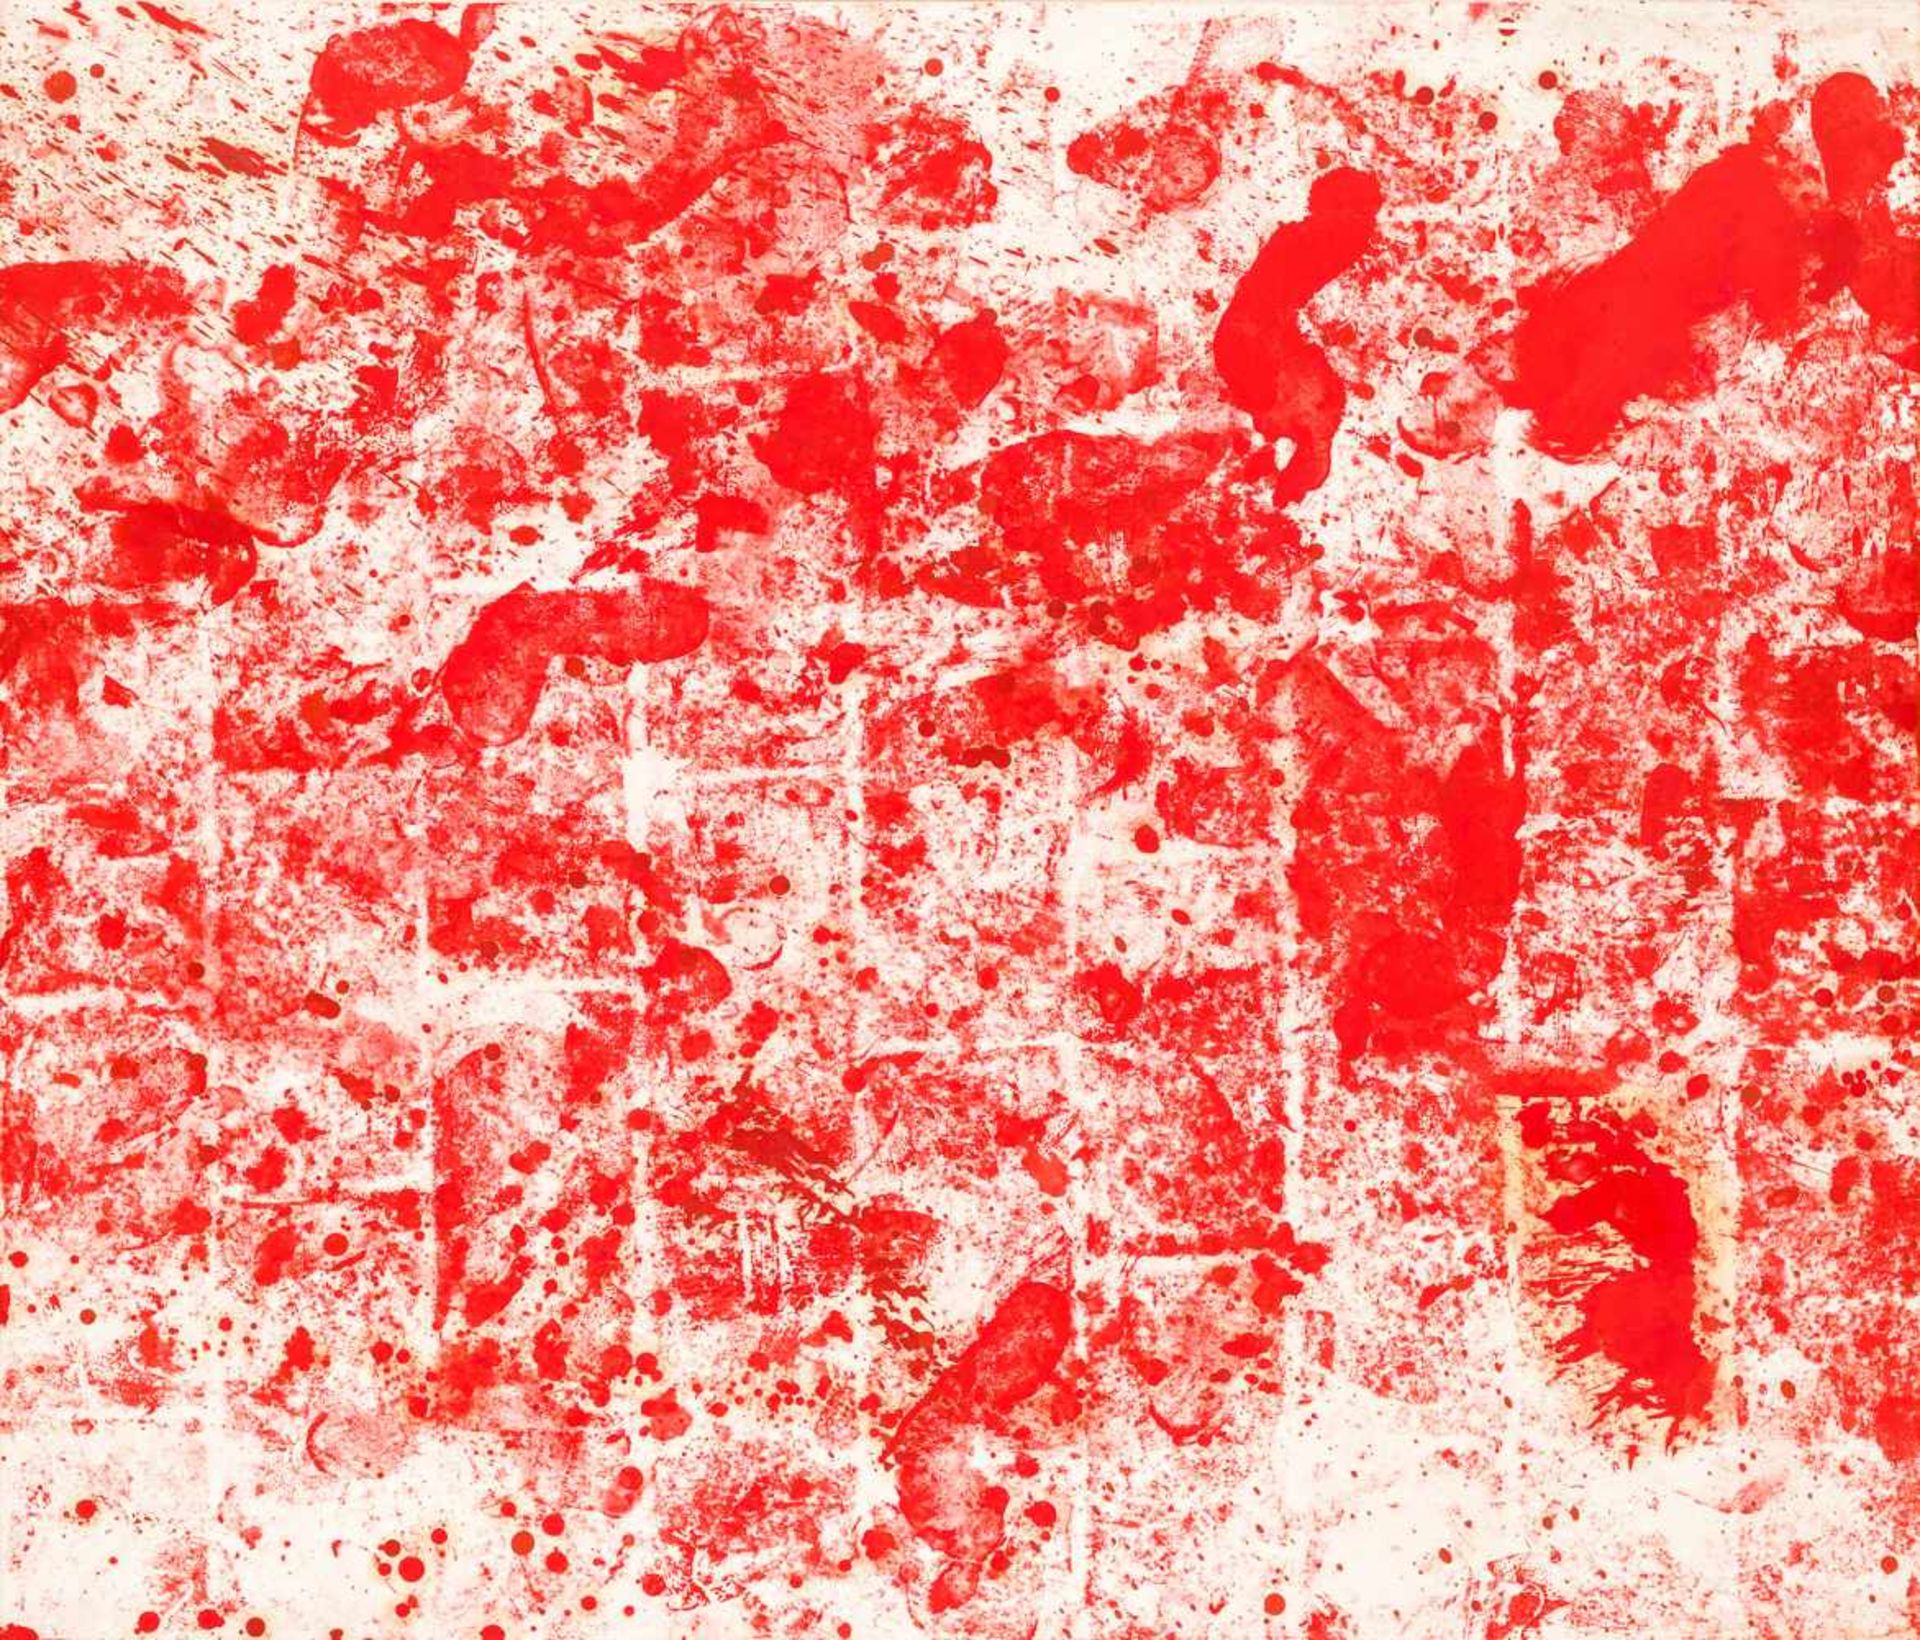 Hermann Nitsch (hs art)Wien 1938 *Ohne Titel (Bodentuch) / untitled (floorcloth)Öl und Blut auf